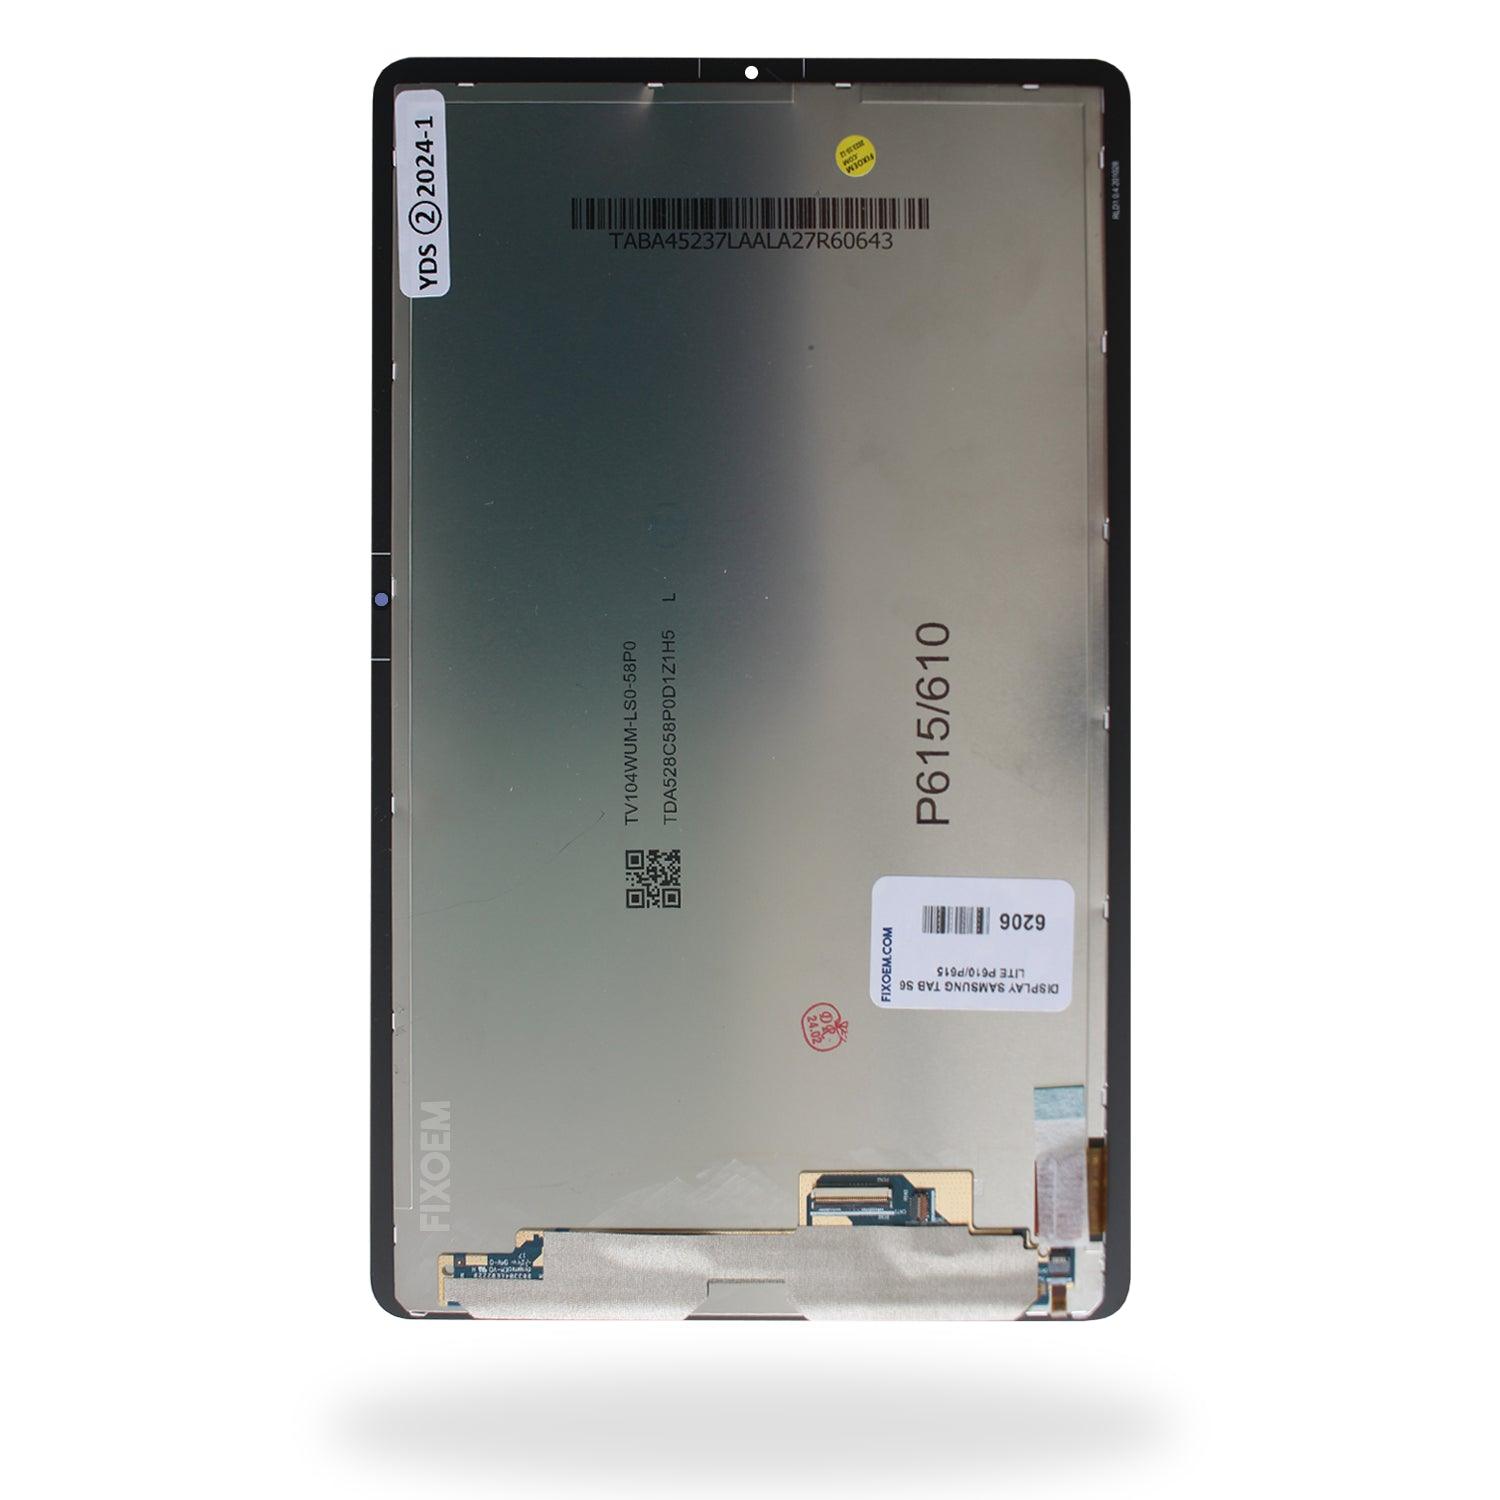 Display Samsung Tab S6 Lite P610 / P615 / P613 a solo $ 800.00 Refaccion y puestos celulares, refurbish y microelectronica.- FixOEM